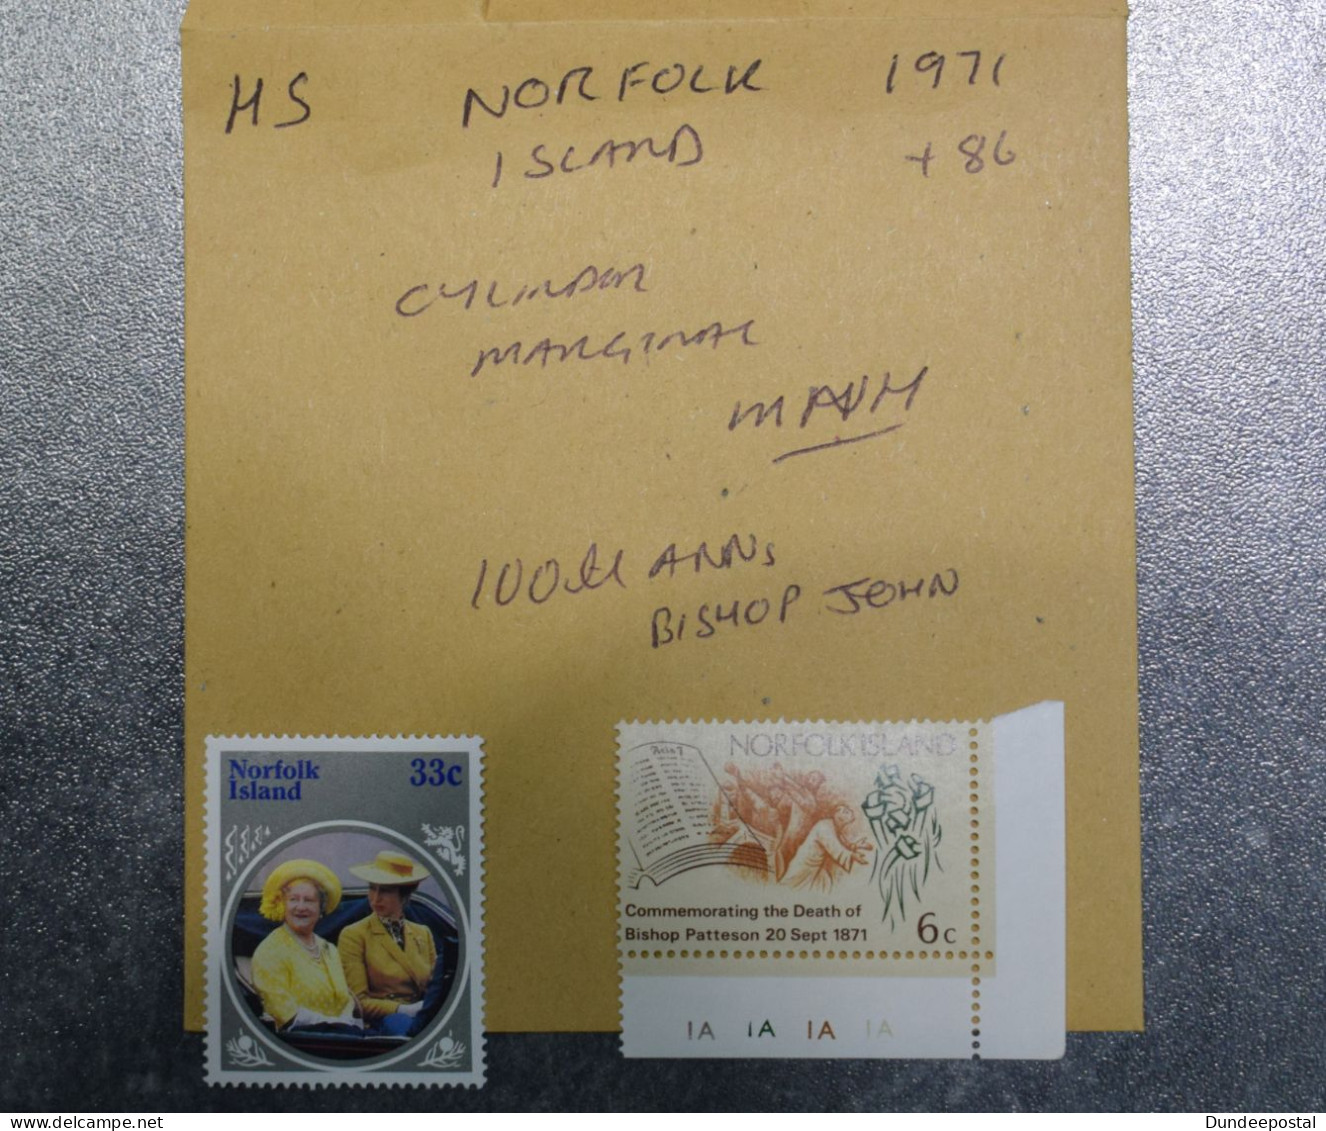 NORFOLK ISLAND  STAMPS  Coms 1971 - 86   ~~L@@K~~ - Norfolk Island